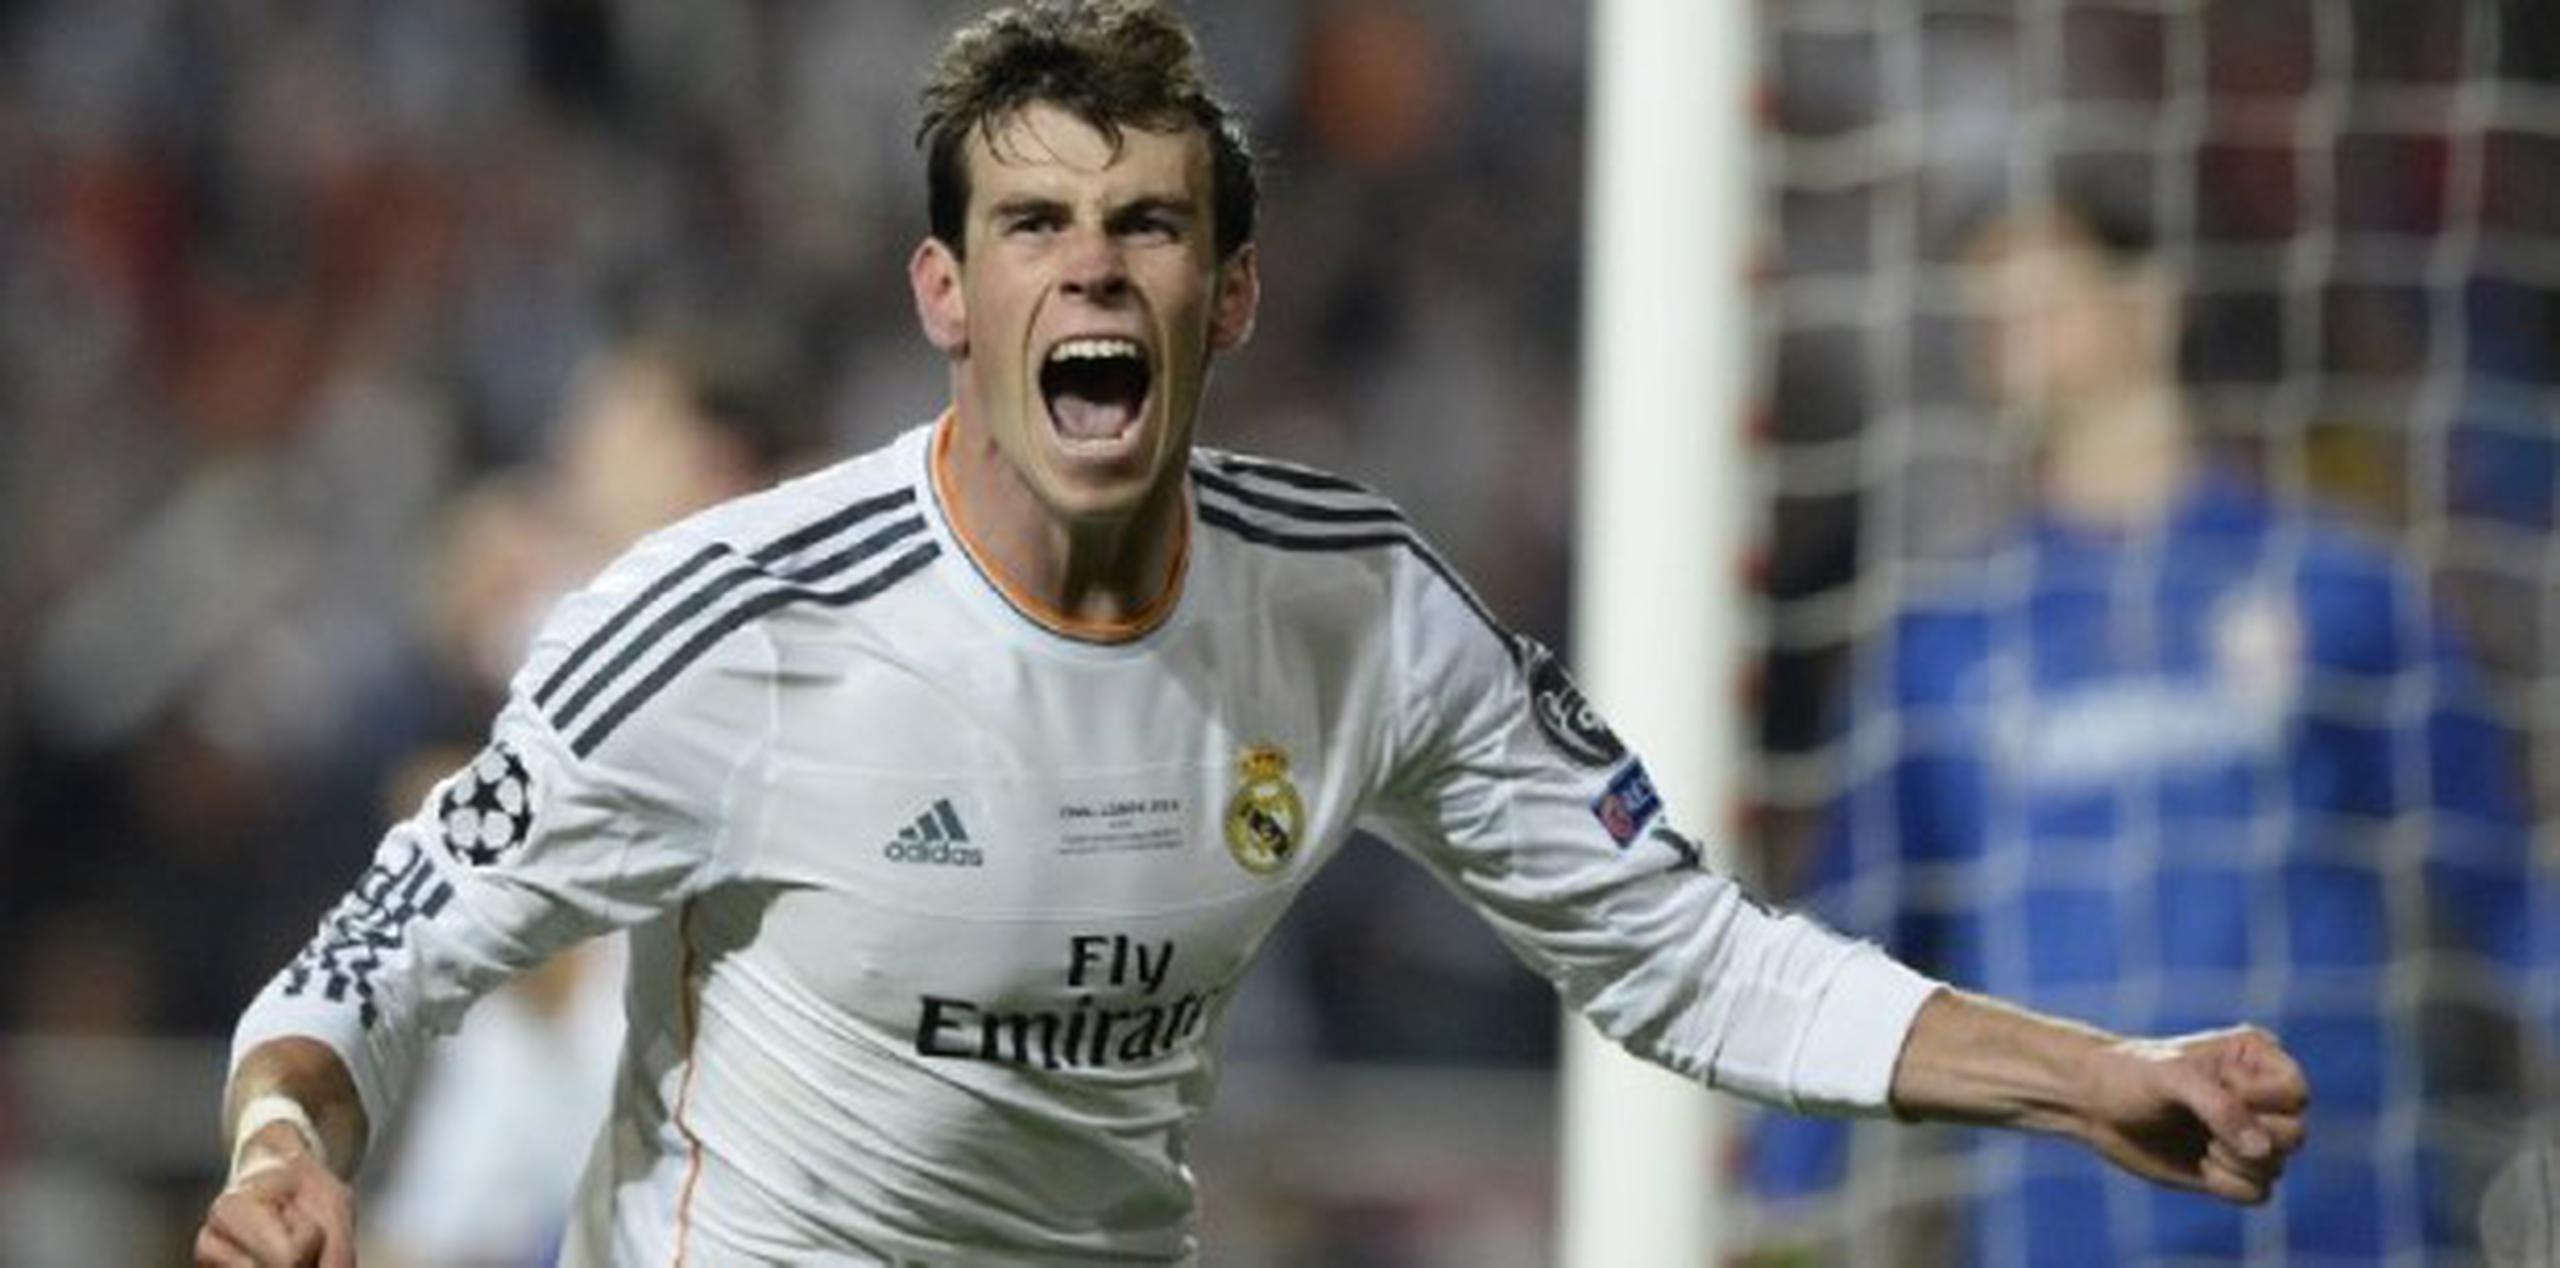 El delantero del Real Madrid, Gareth Bale, celebra luego de anotar en el tiempo extra  (AFP / Franck Fife)